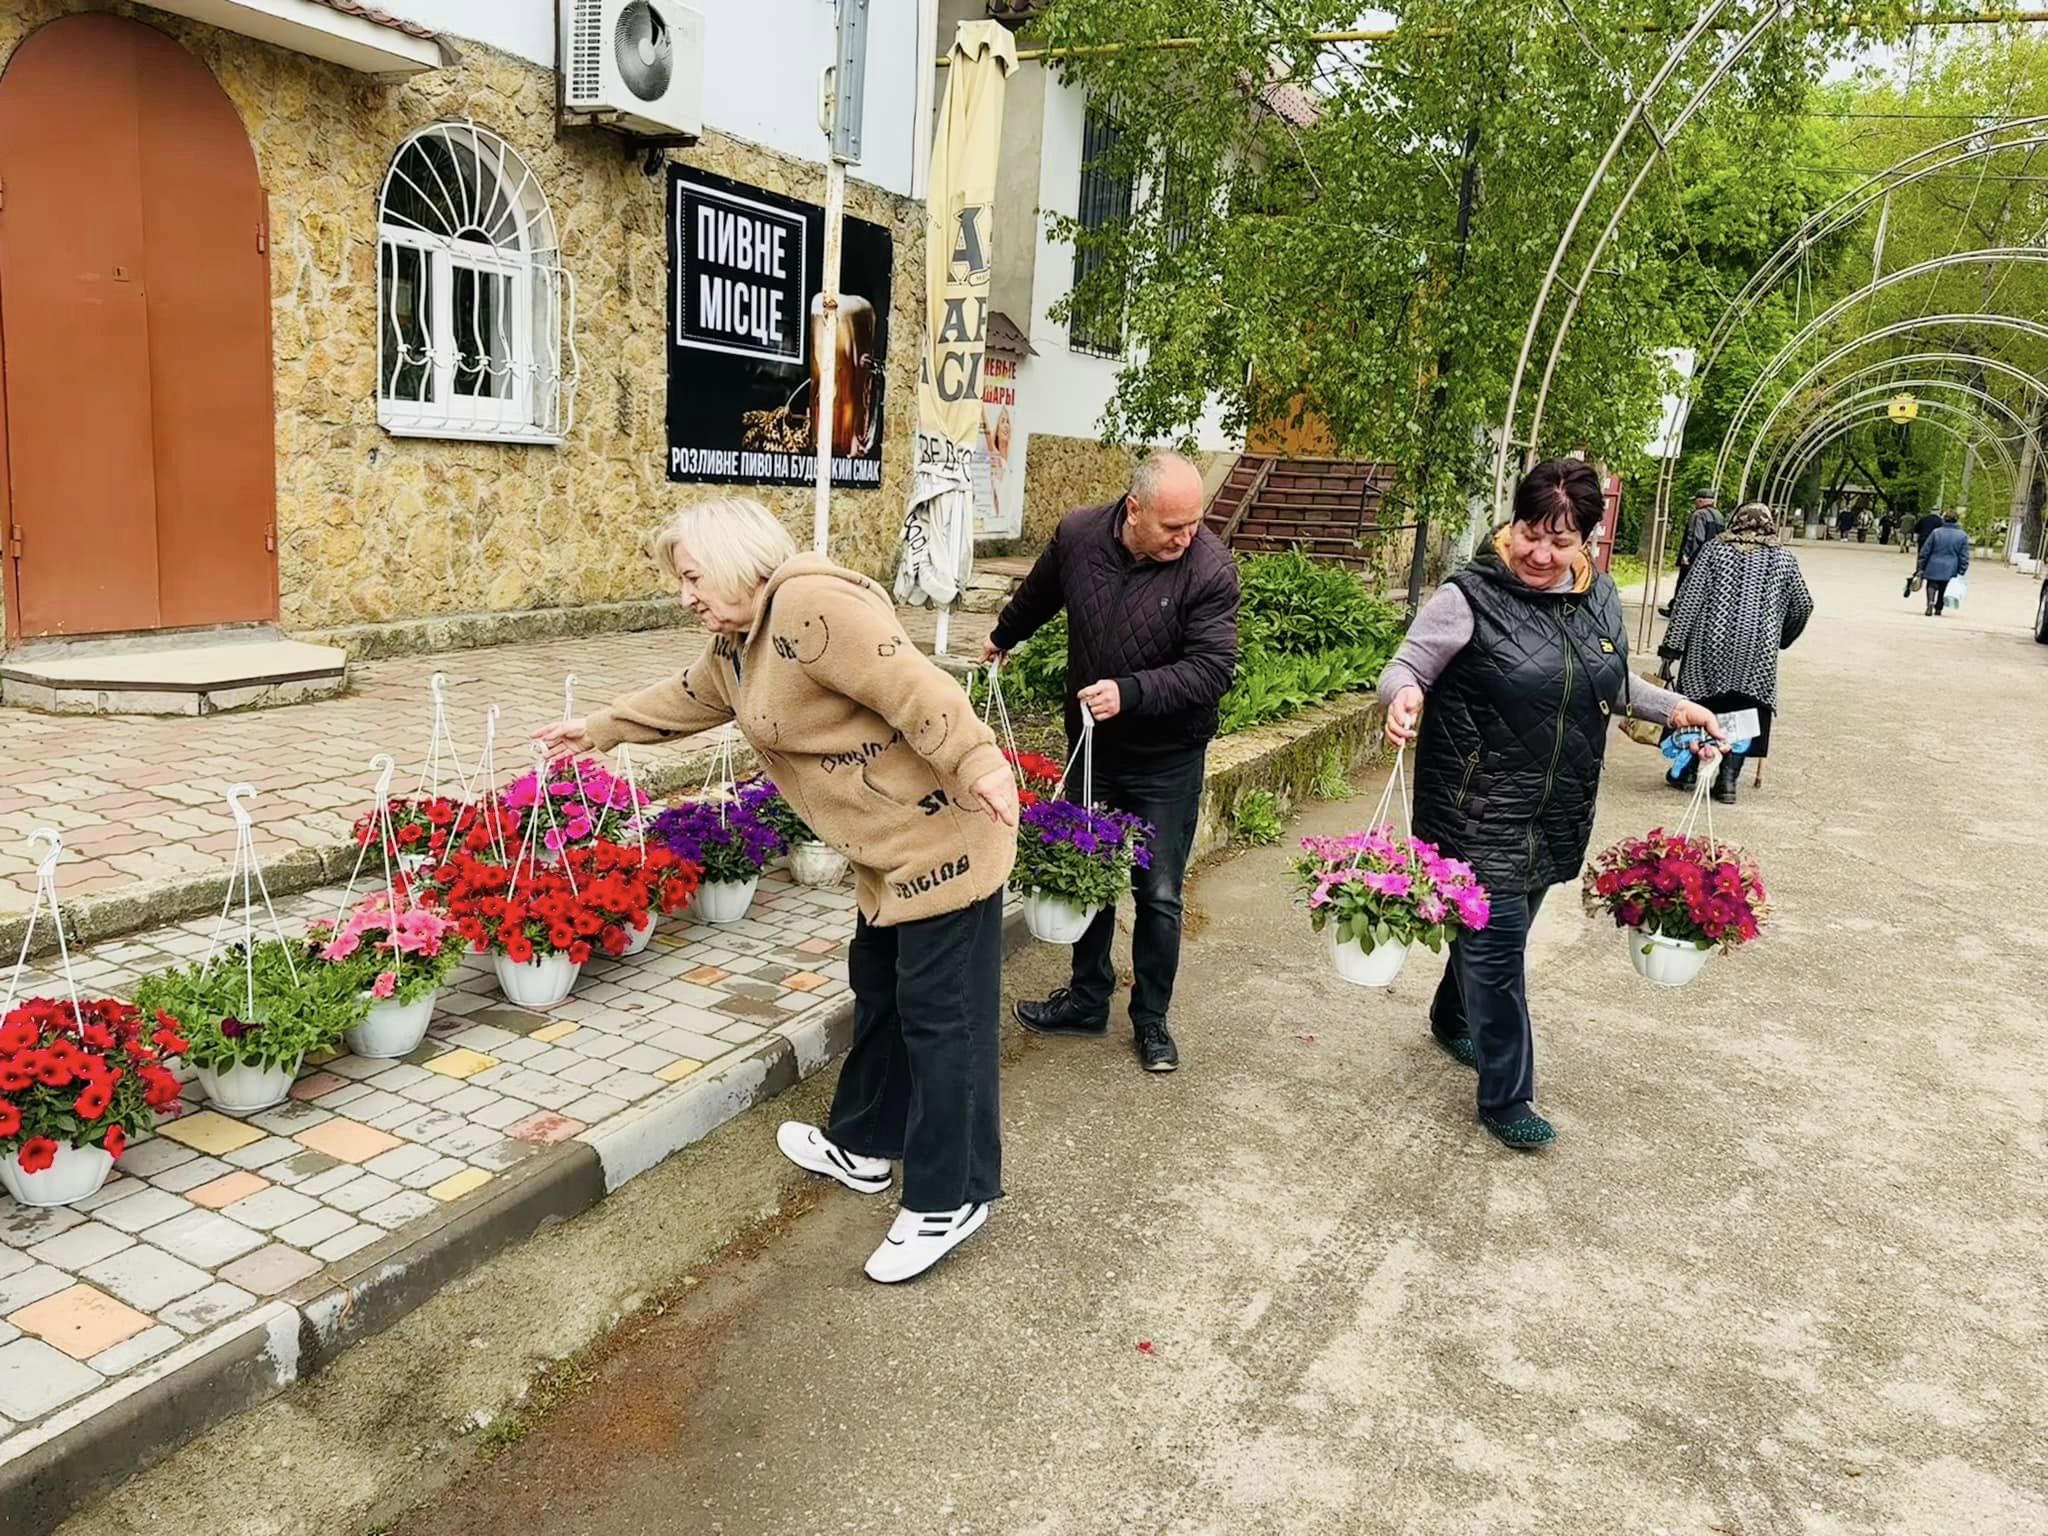 Цветы Победы и возрождение Украины: в поселке Тарутино украсили центральную улицу